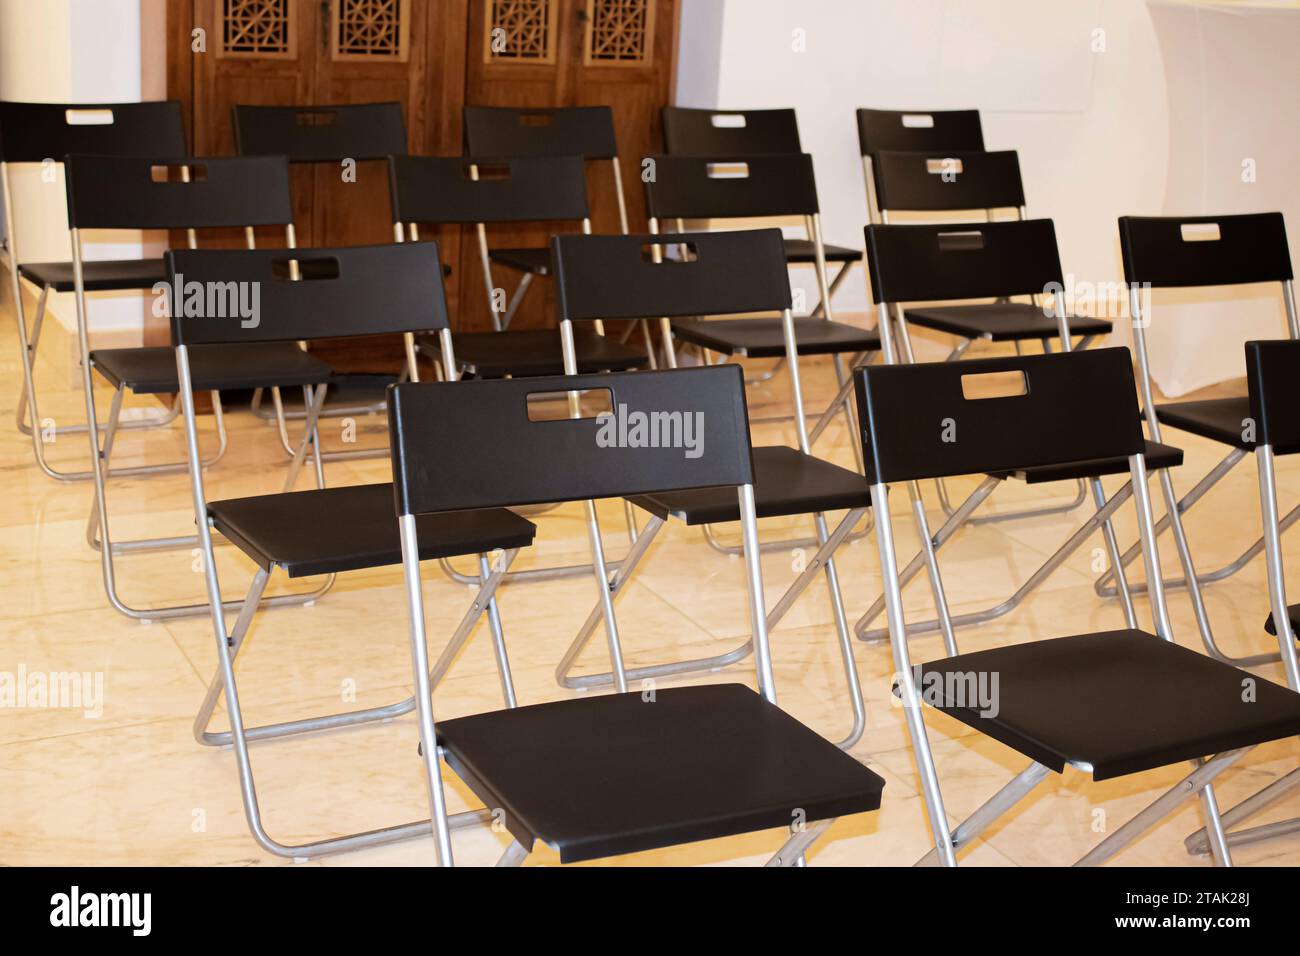 Bequeme Stühle im Konferenzraum. Leere Stühle im Konzertsaal. Halle mit Stühlen. Reihen leerer Stühle im Theater oder Konzertsaal. Präsentati Stockfoto